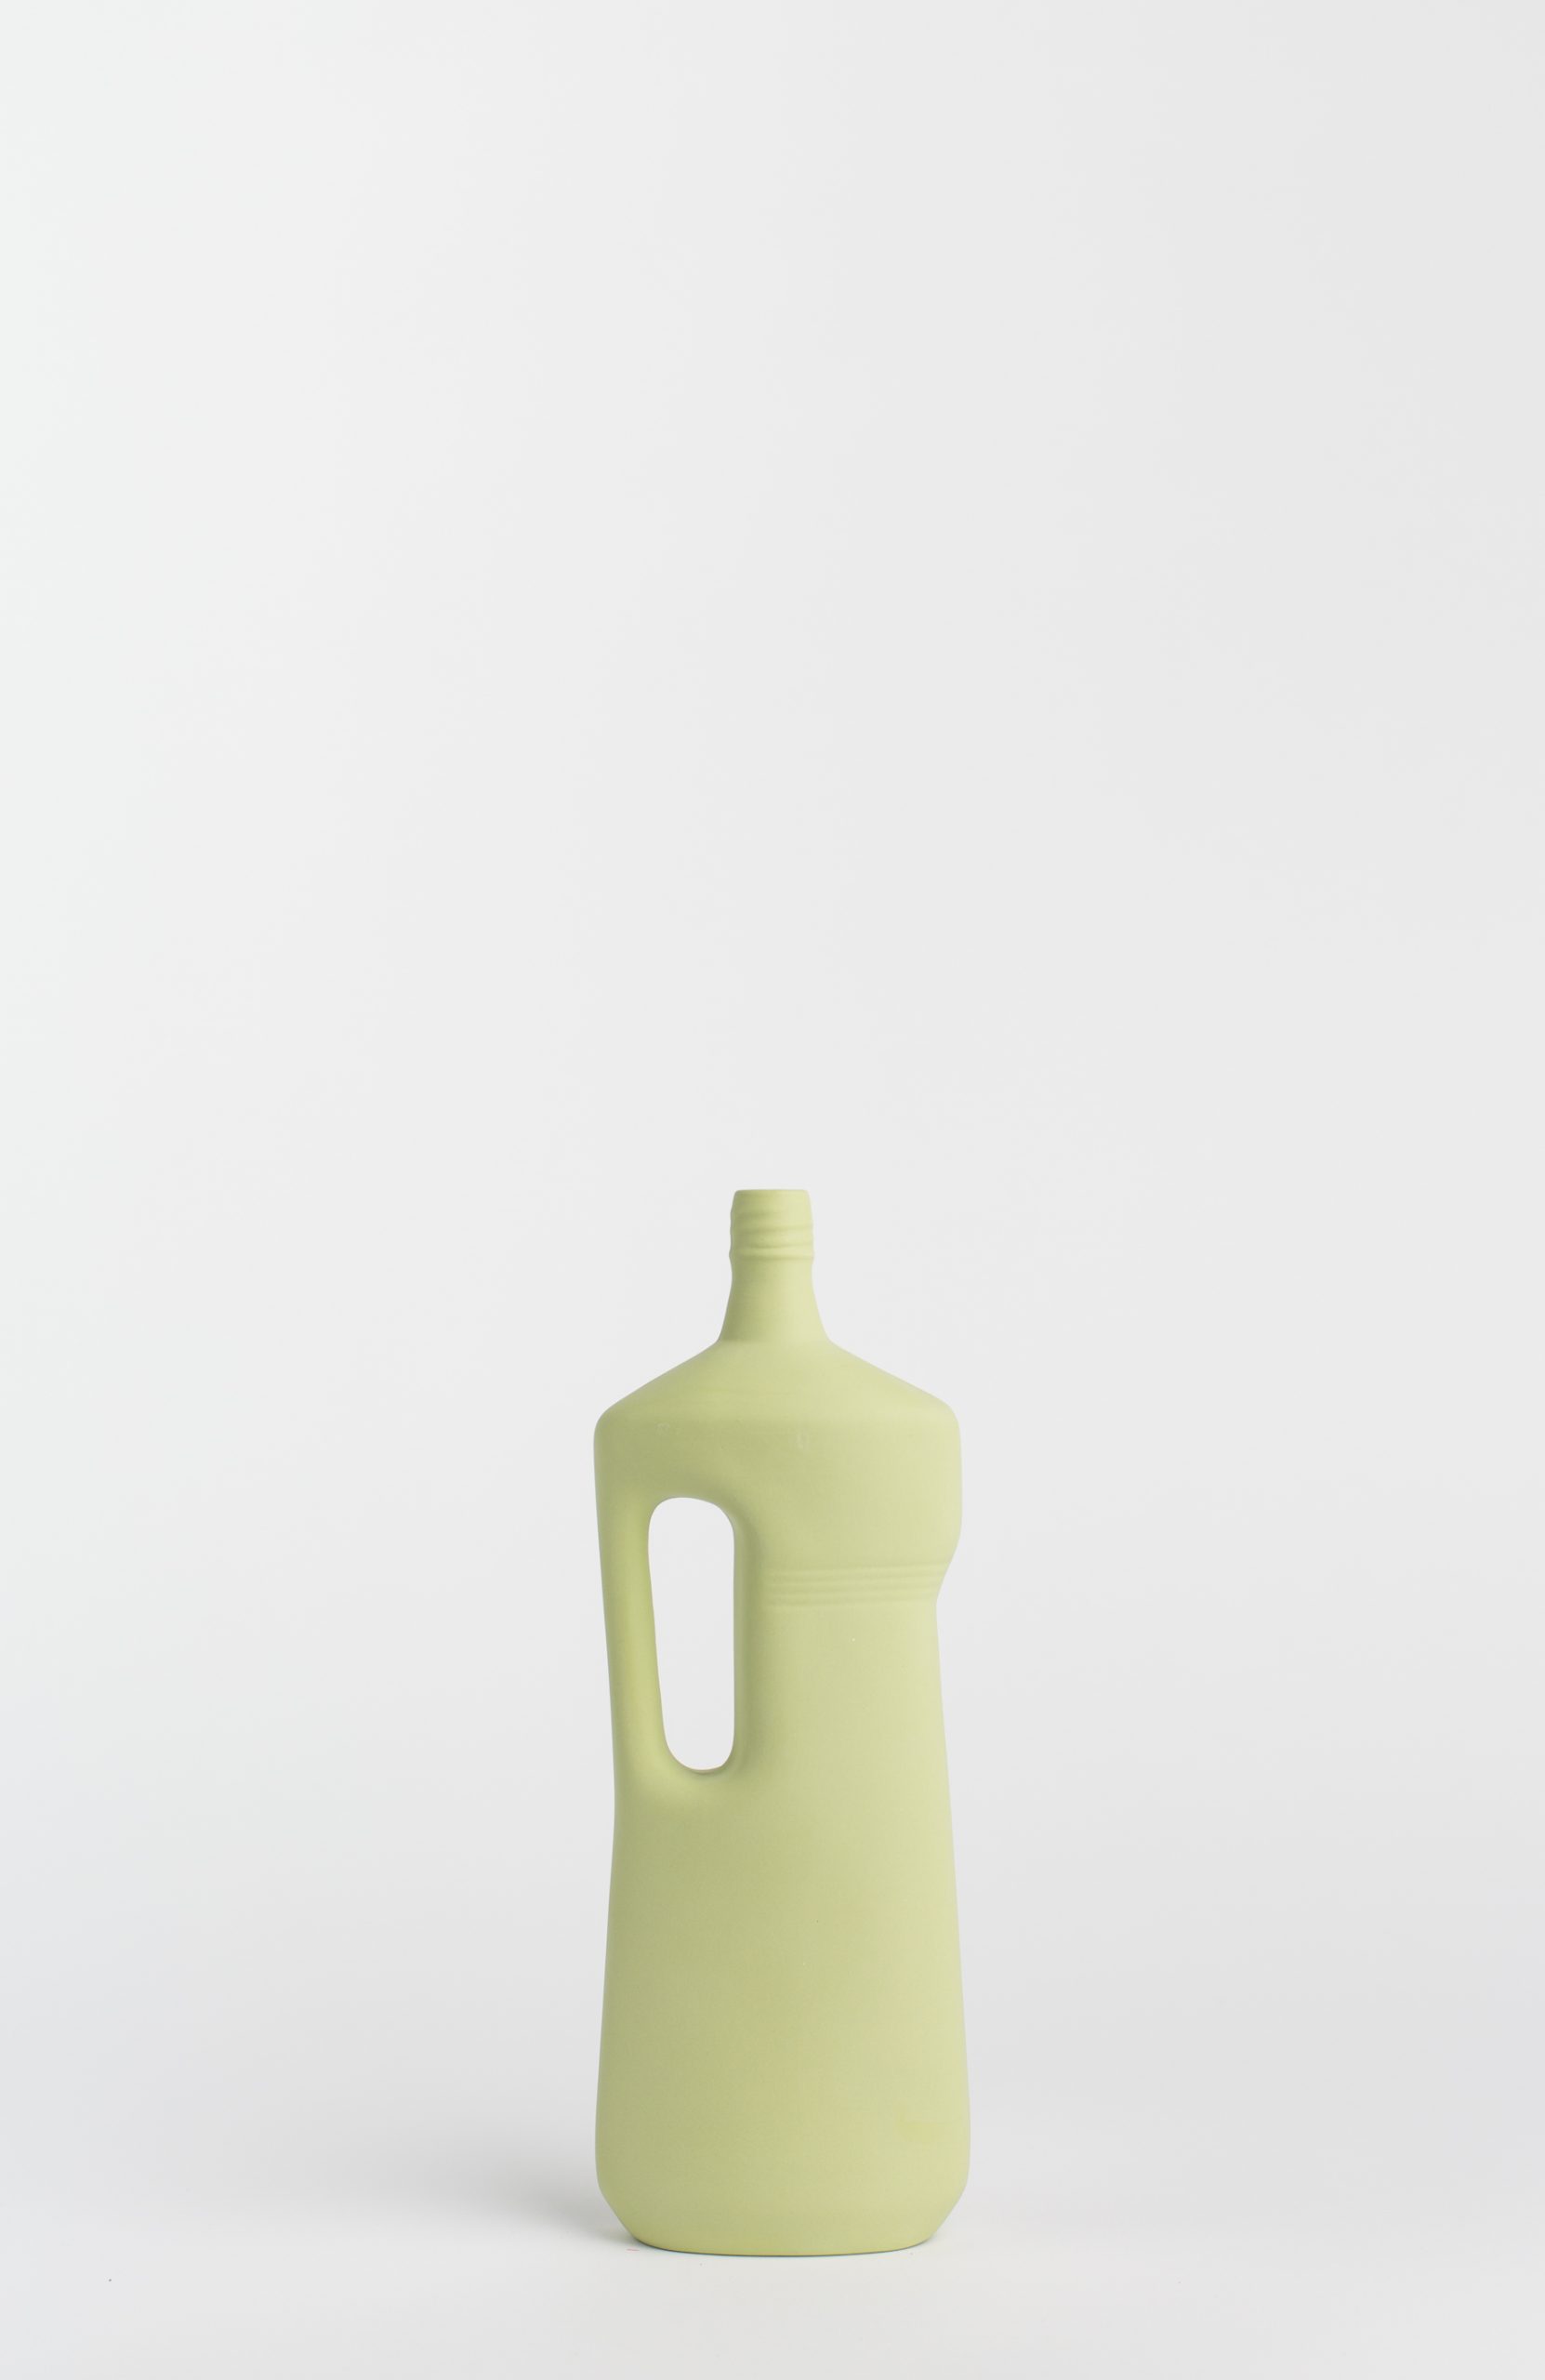 bottlevase #16 light green